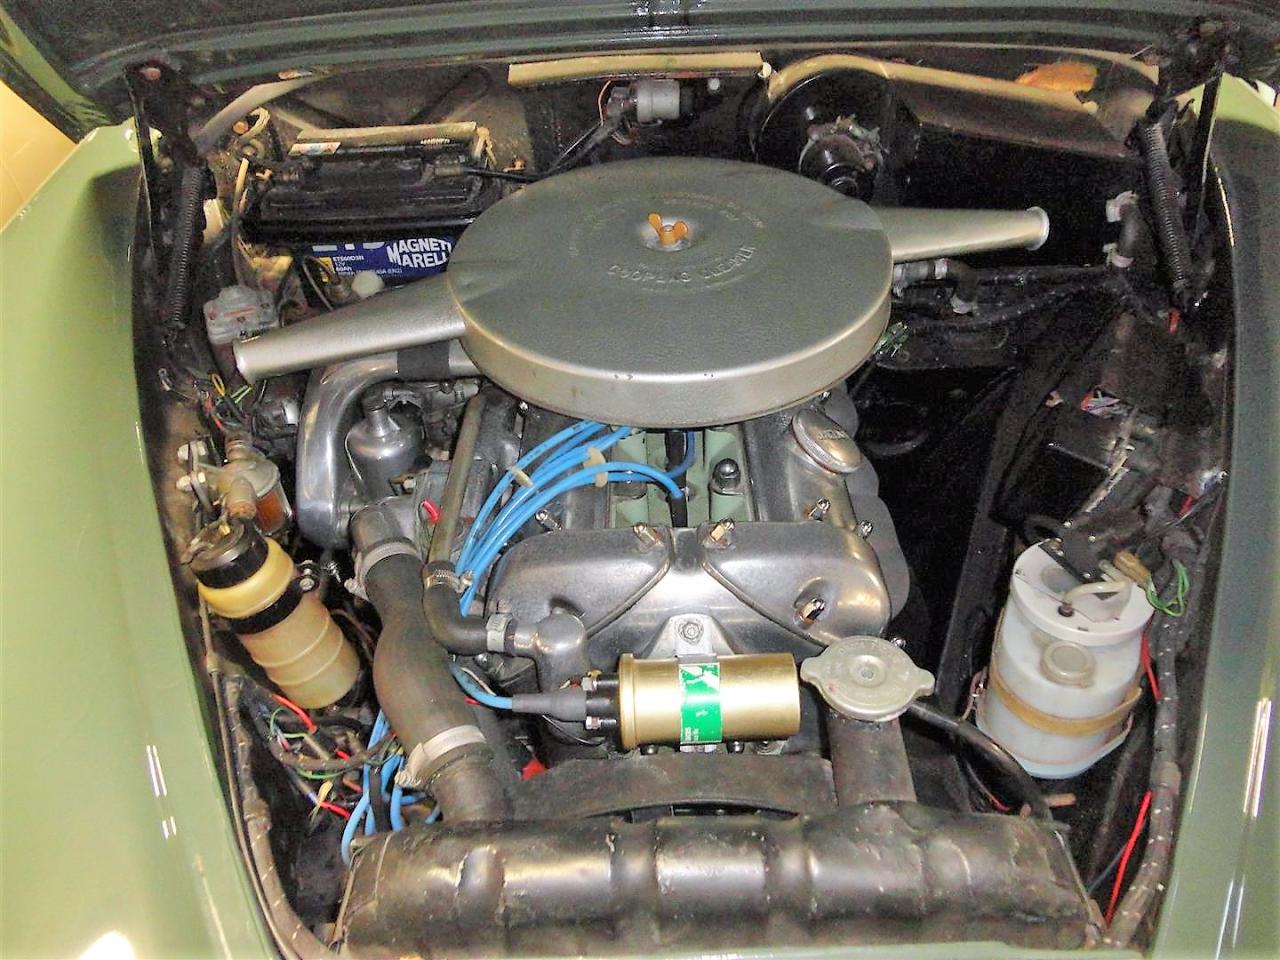 1962 Jaguar MK2 -3.4 ltr RHD